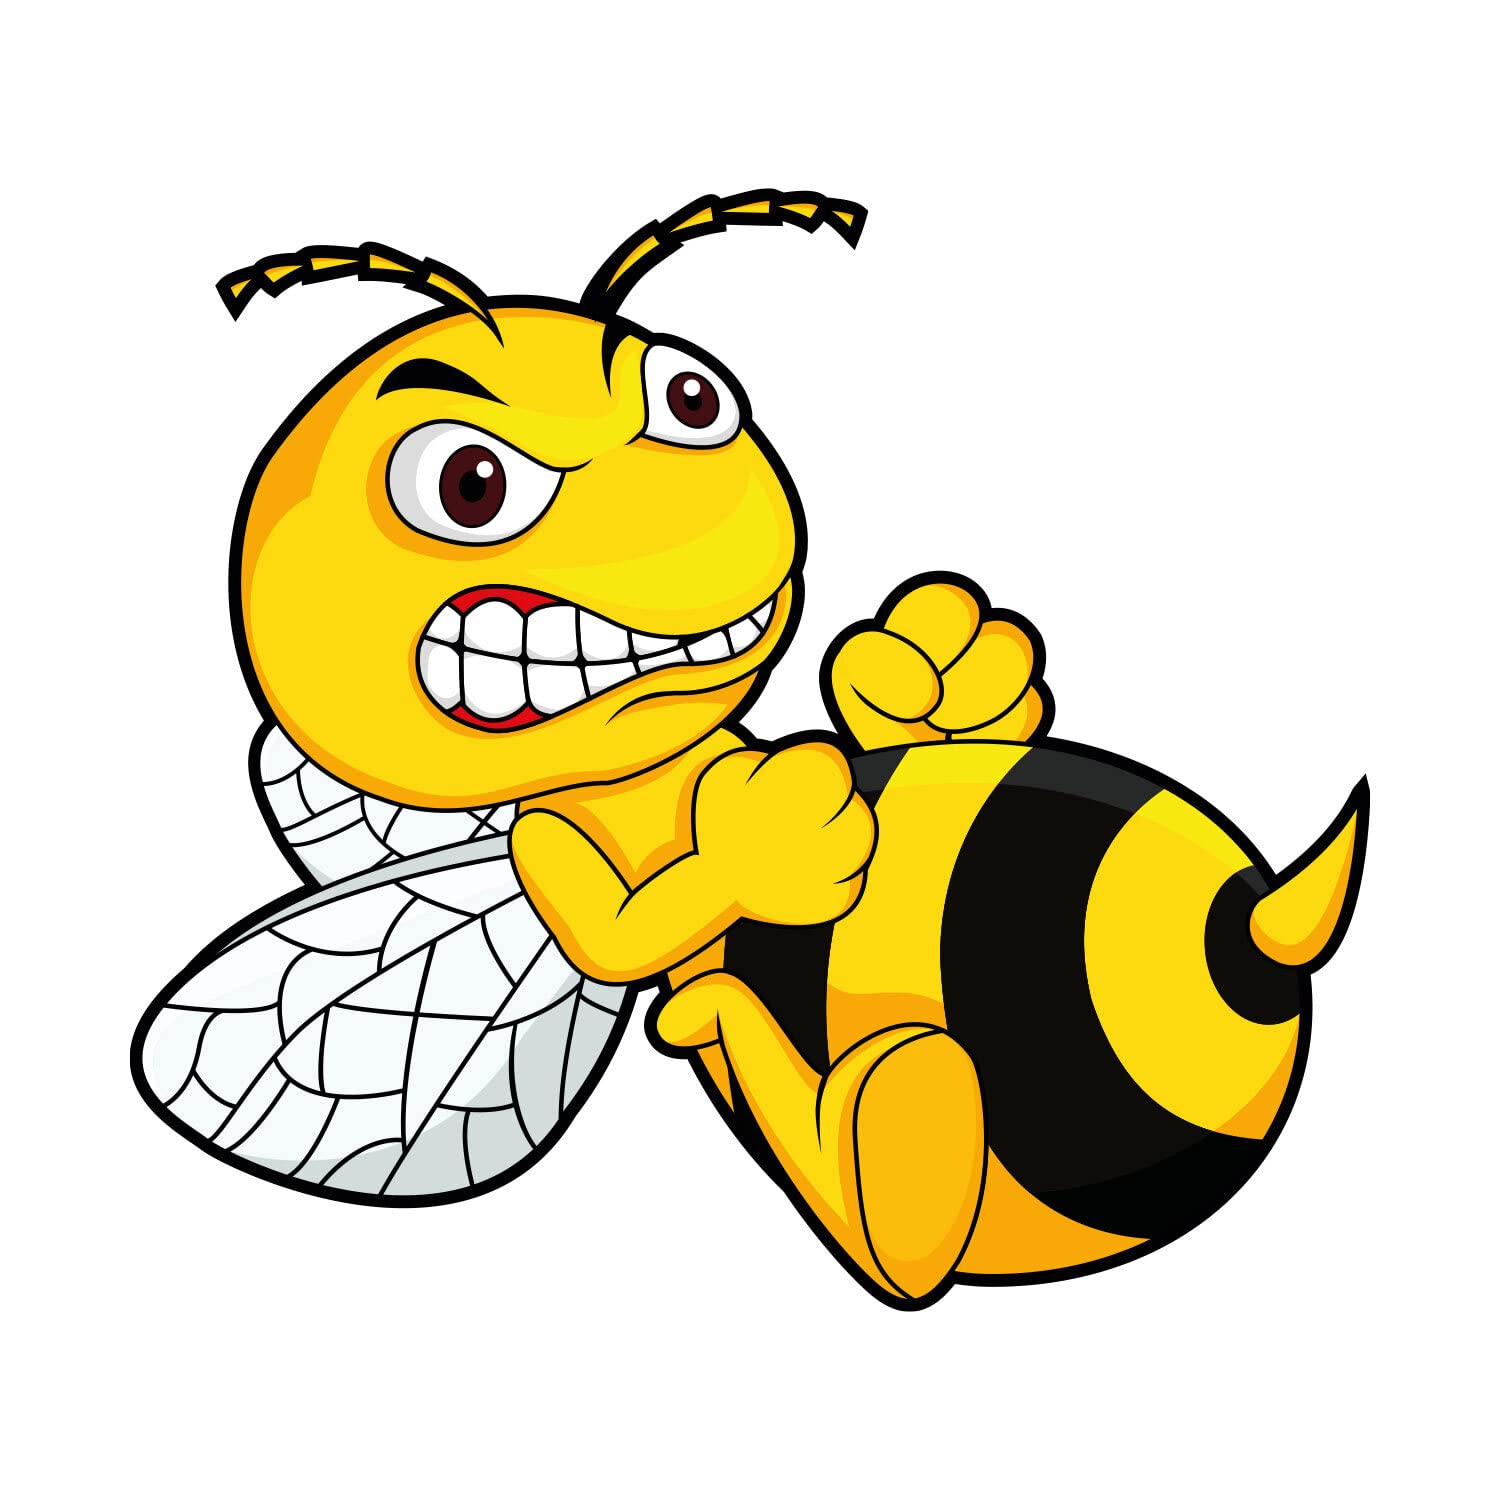 Aufkleber Böse Biene Angry Bee I 15 x 13 cm groß I gelber Sticker Wespe nach rechts I für Auto LKW Motorrad Moped Mofa Roller Helm Notebook Laptop I wetterfest - kfz_511 von iSecur